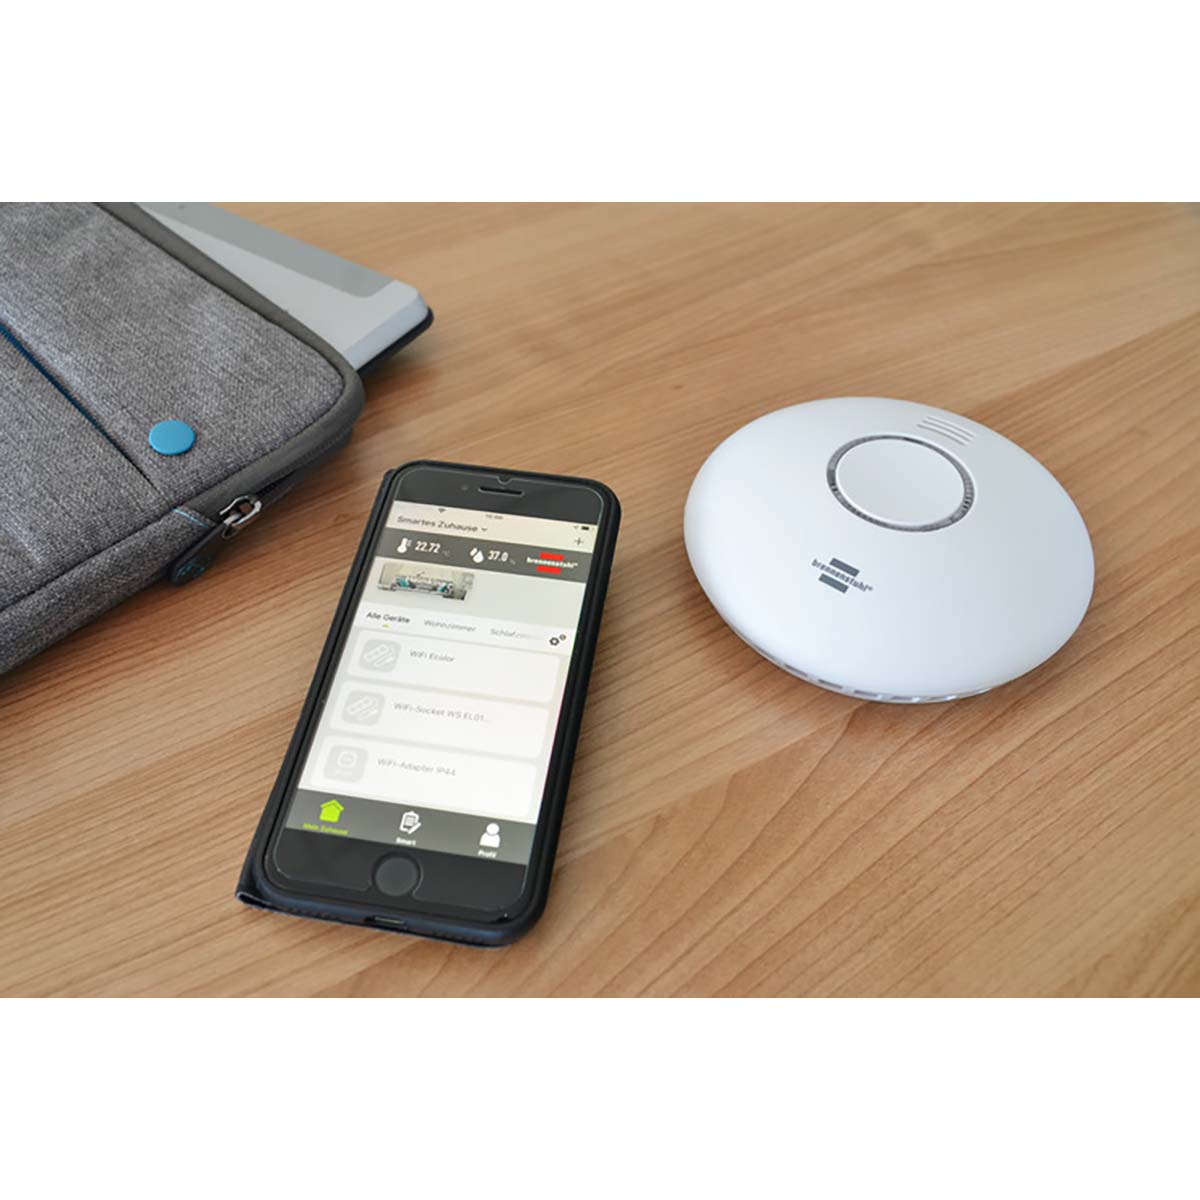 brennenstuhl®Connect Smarte Rauch- und Wärmemelder WRHM01 mit App-Benachrichtigung und durchdringendem Alarmsignal 85 Db